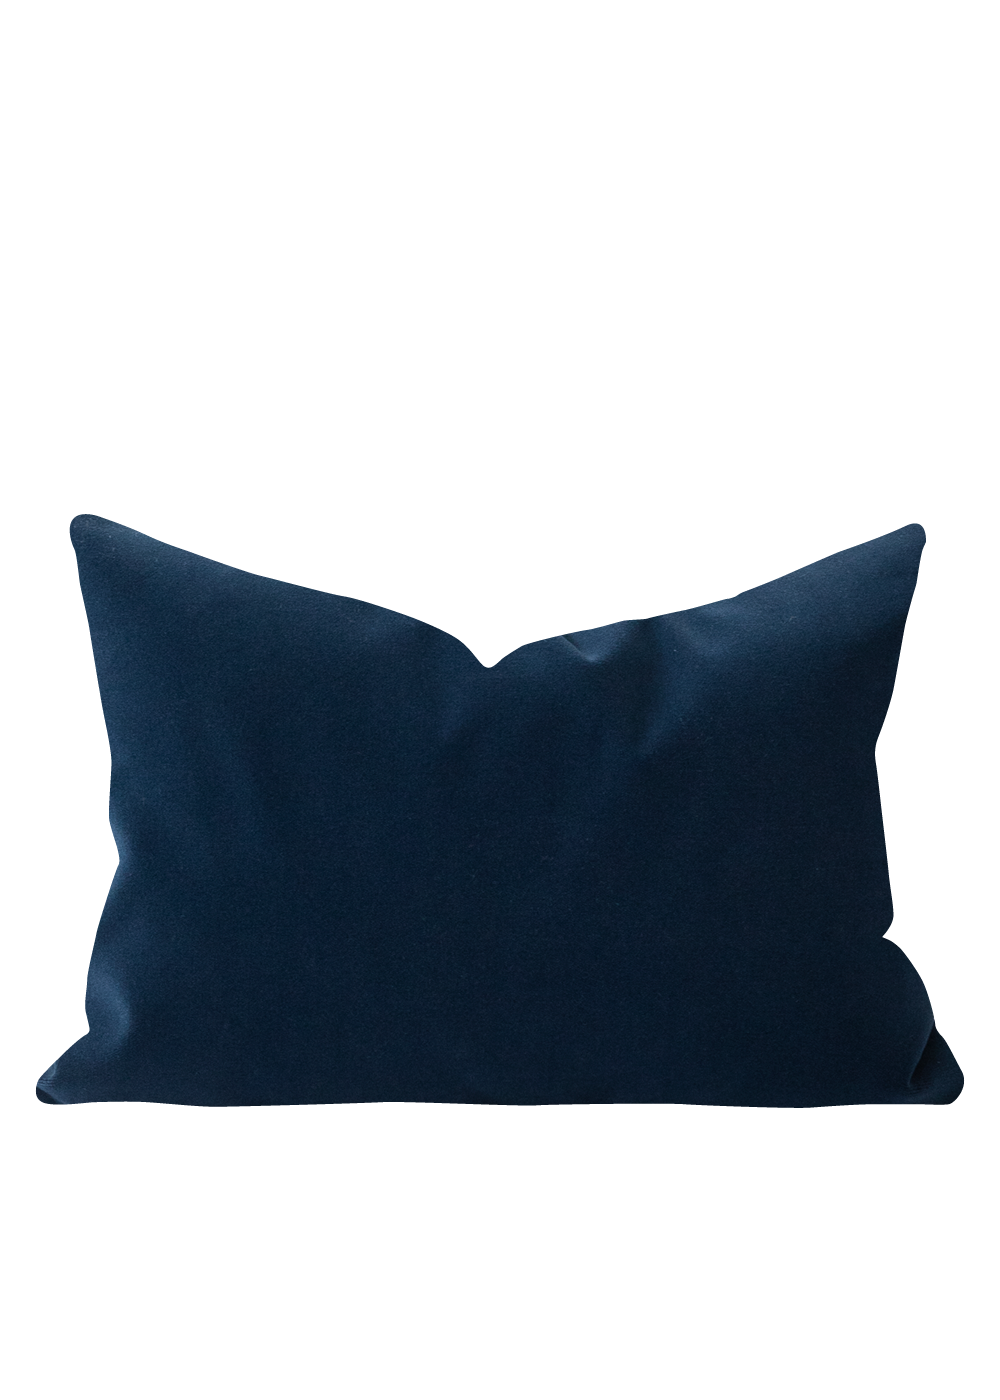 Jamie Velvet Pillow Cover, Midnight